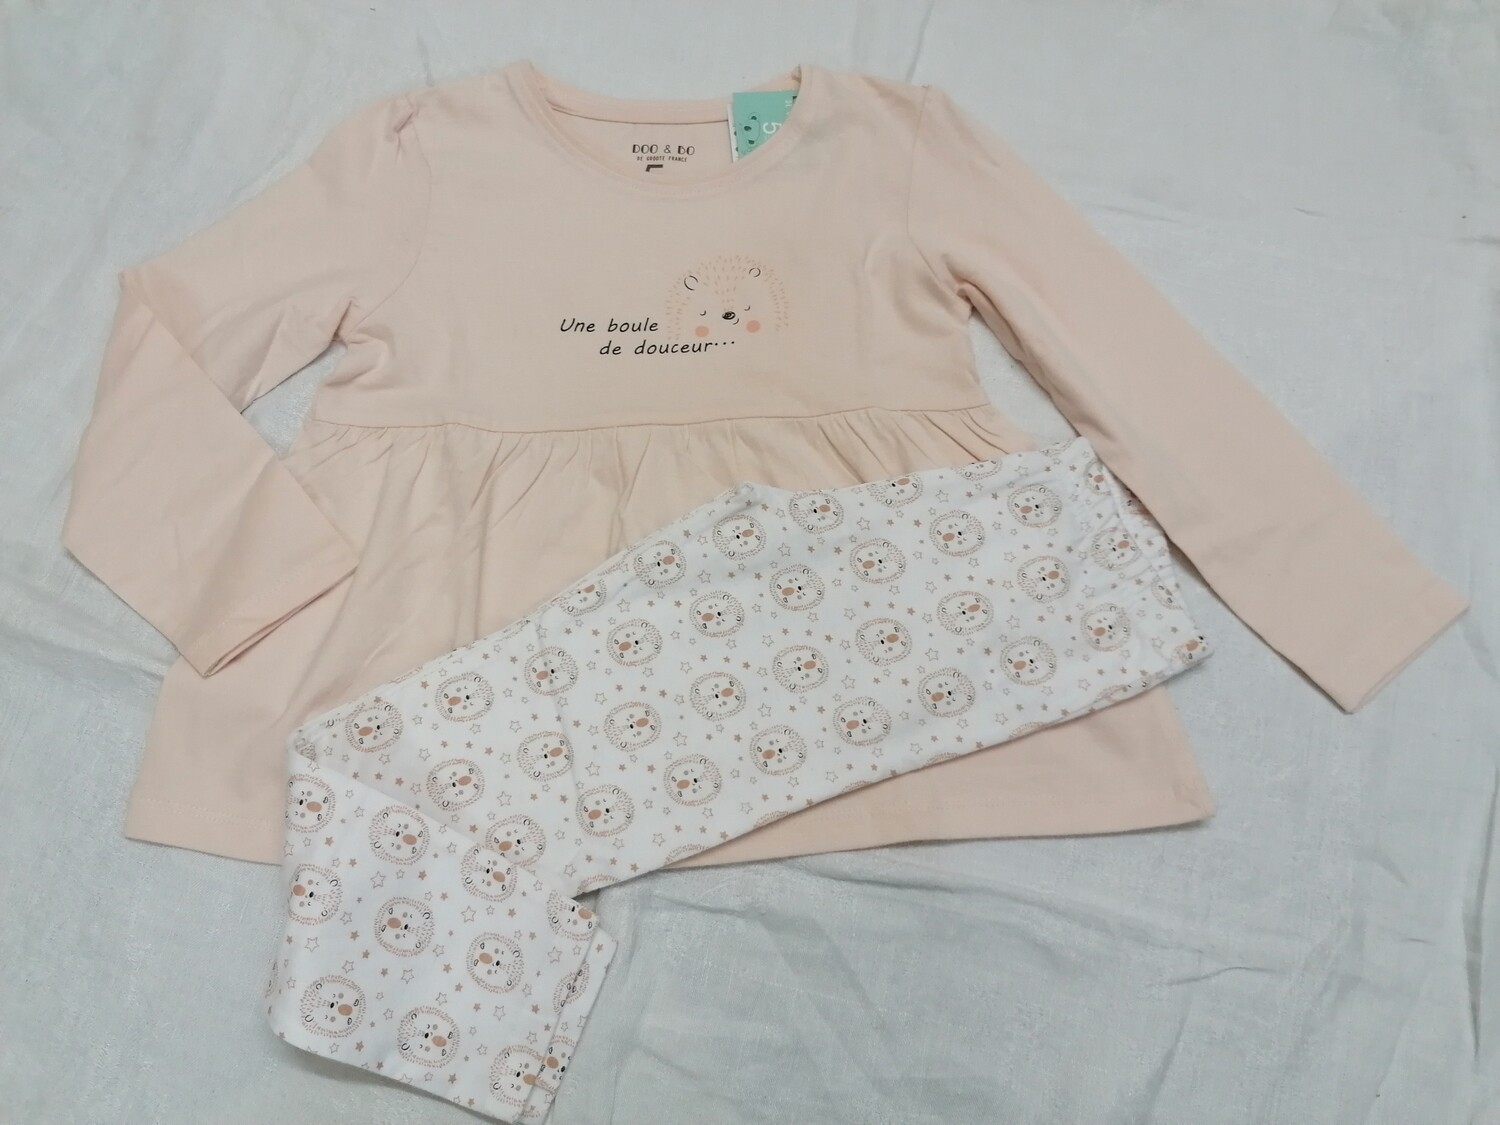 Pyjama 2 pièces, rose poudré imprimé Boule de douceur, hérisson